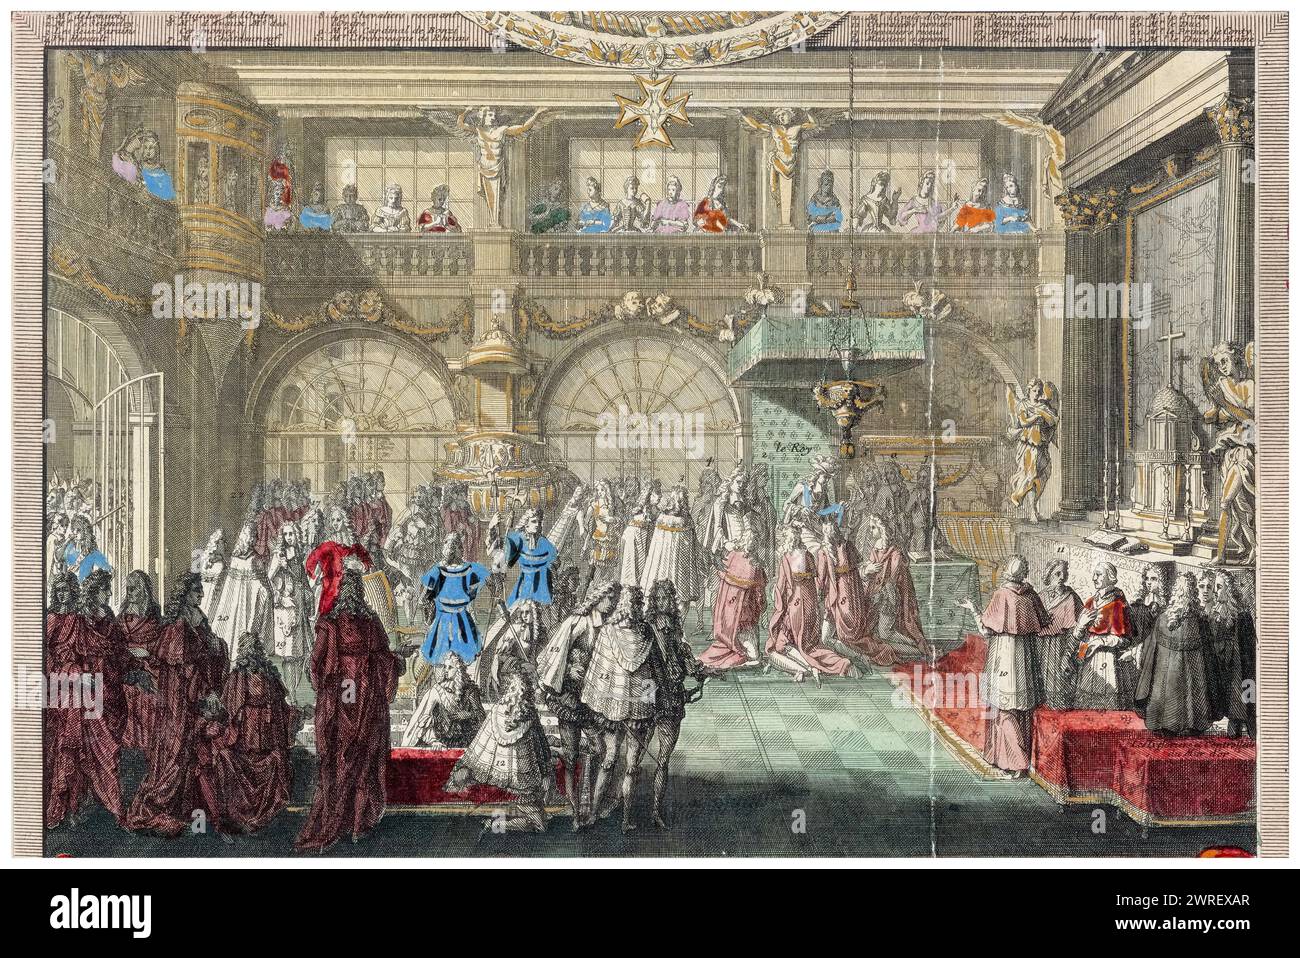 Création des Chevaliers de l'ordre du Saint-esprit par le roi Louis XIV de France dans la chapelle de Versailles les 1er janvier et 2 février 1689, gravure de Nicolas Langlois, 1690 Banque D'Images